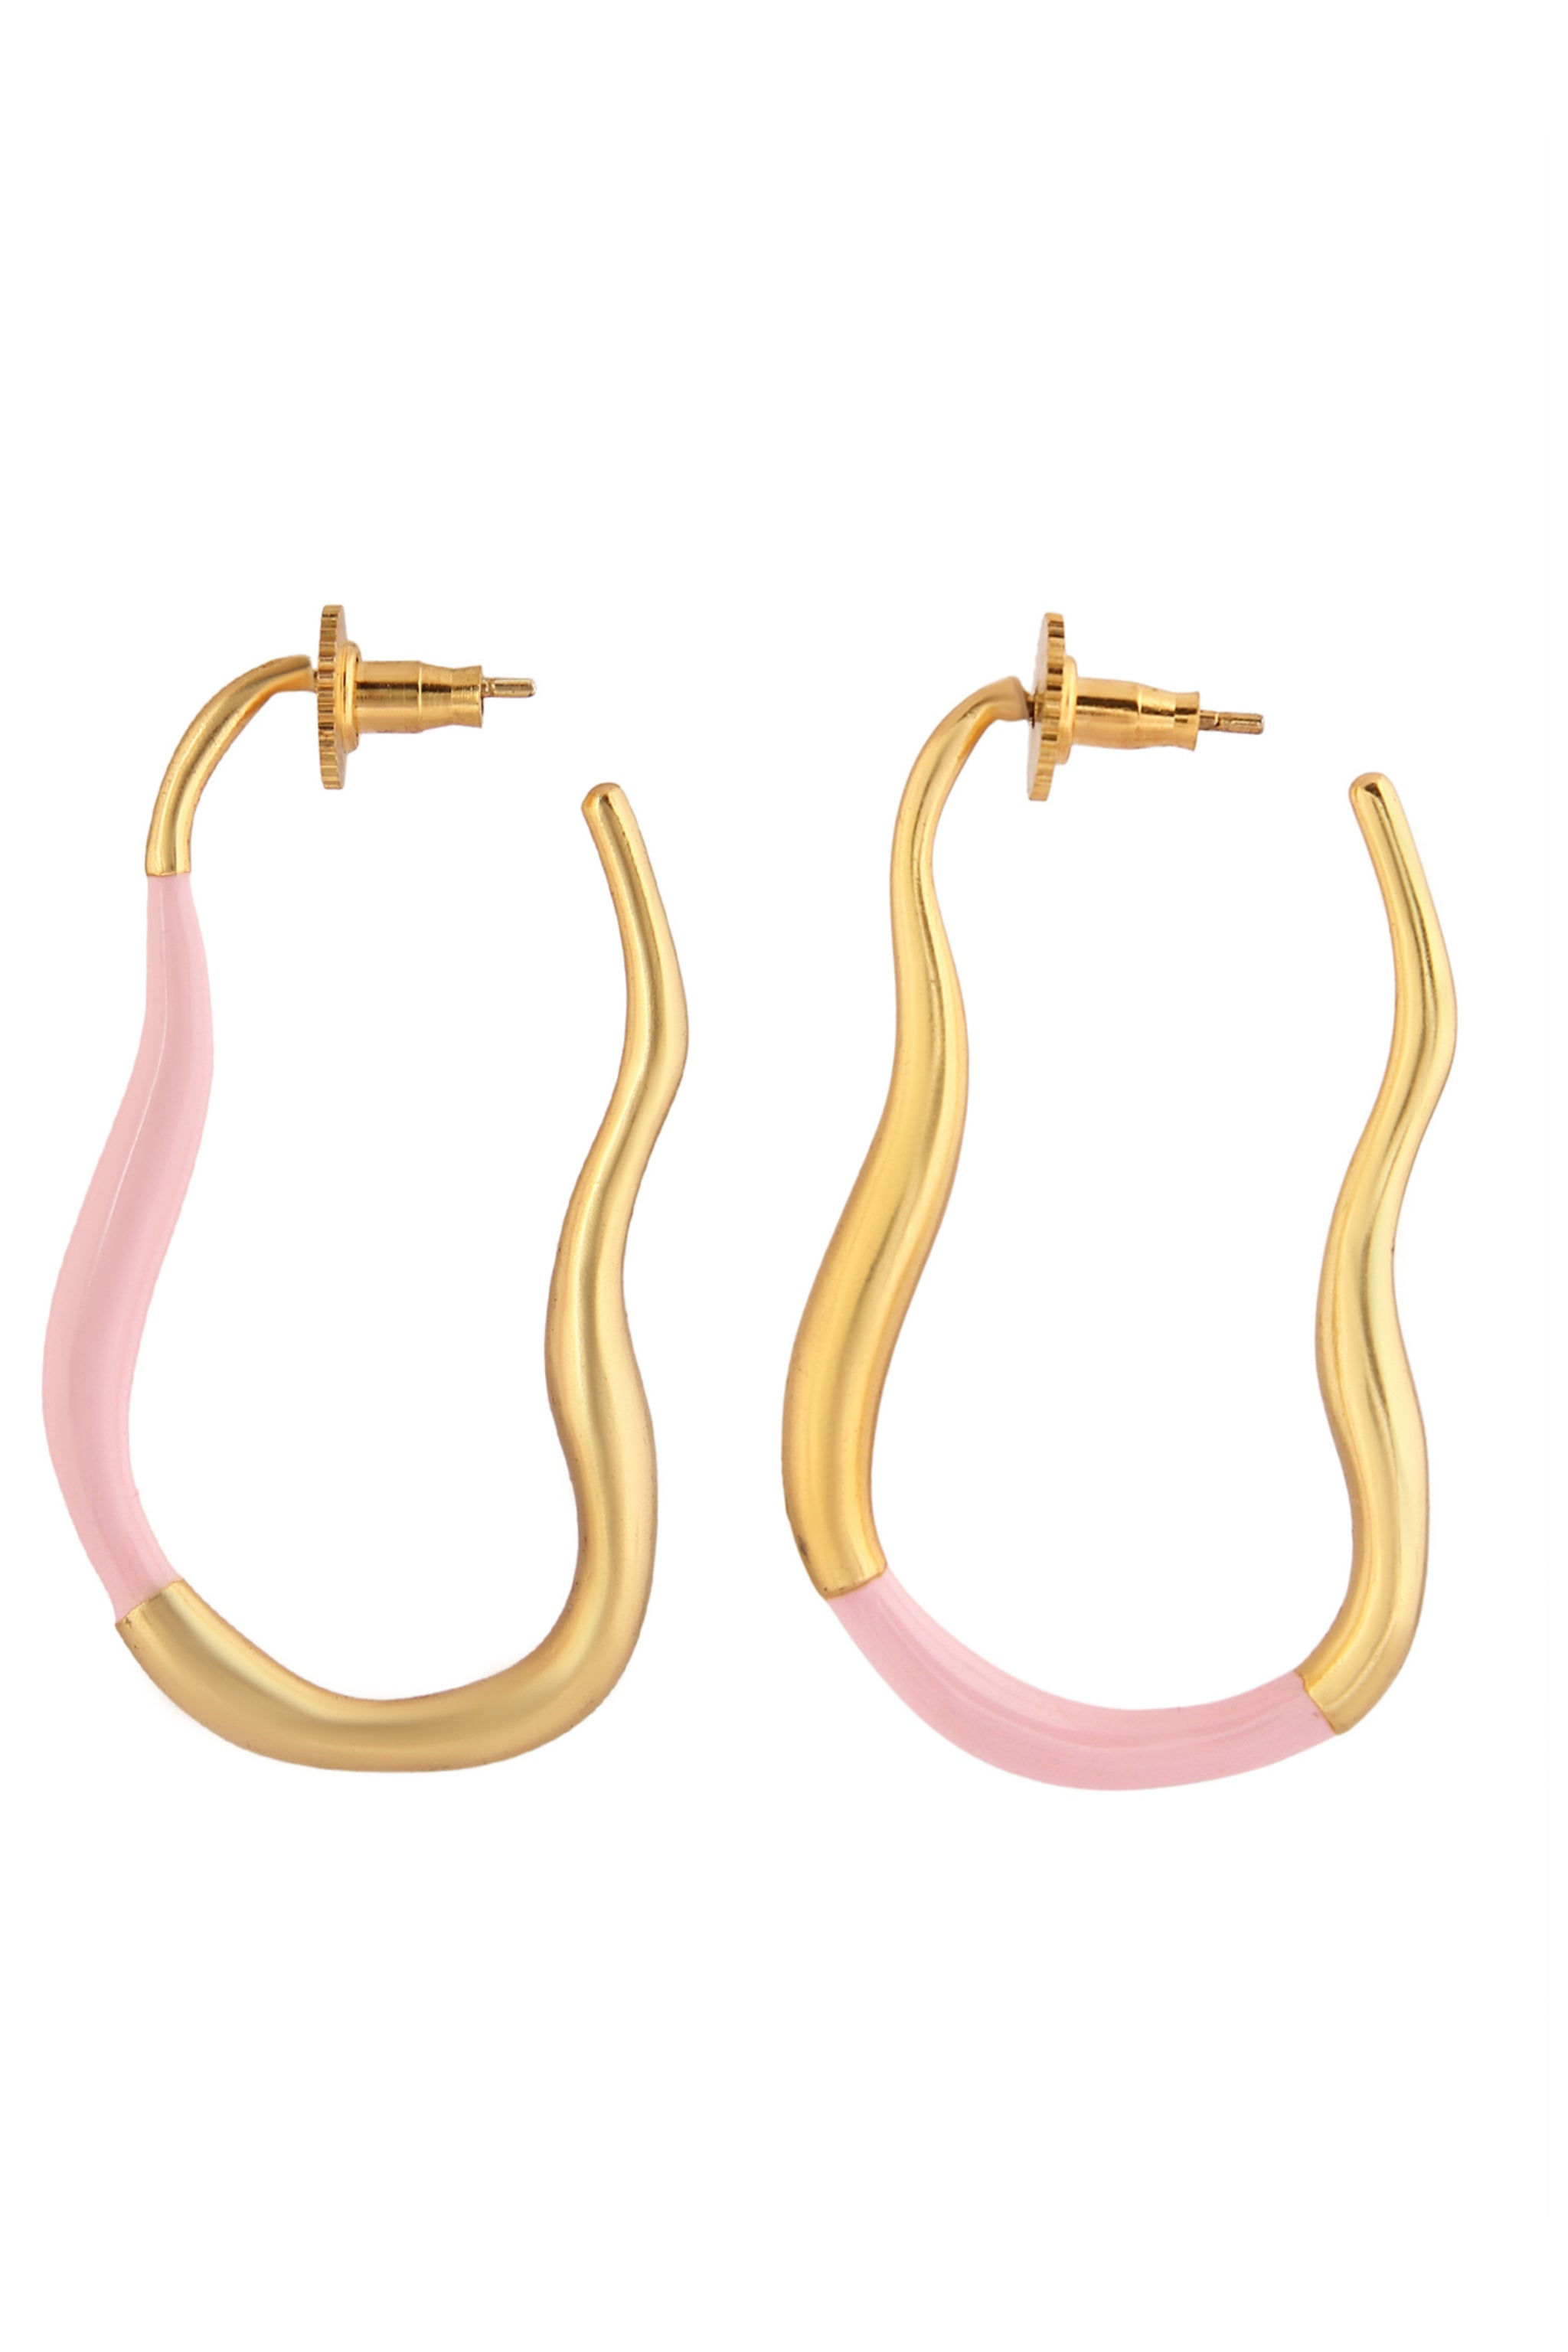 Buy Hoop Earrings Pink Magenta Gold Earrings Pink Gold Line Online in India   Etsy